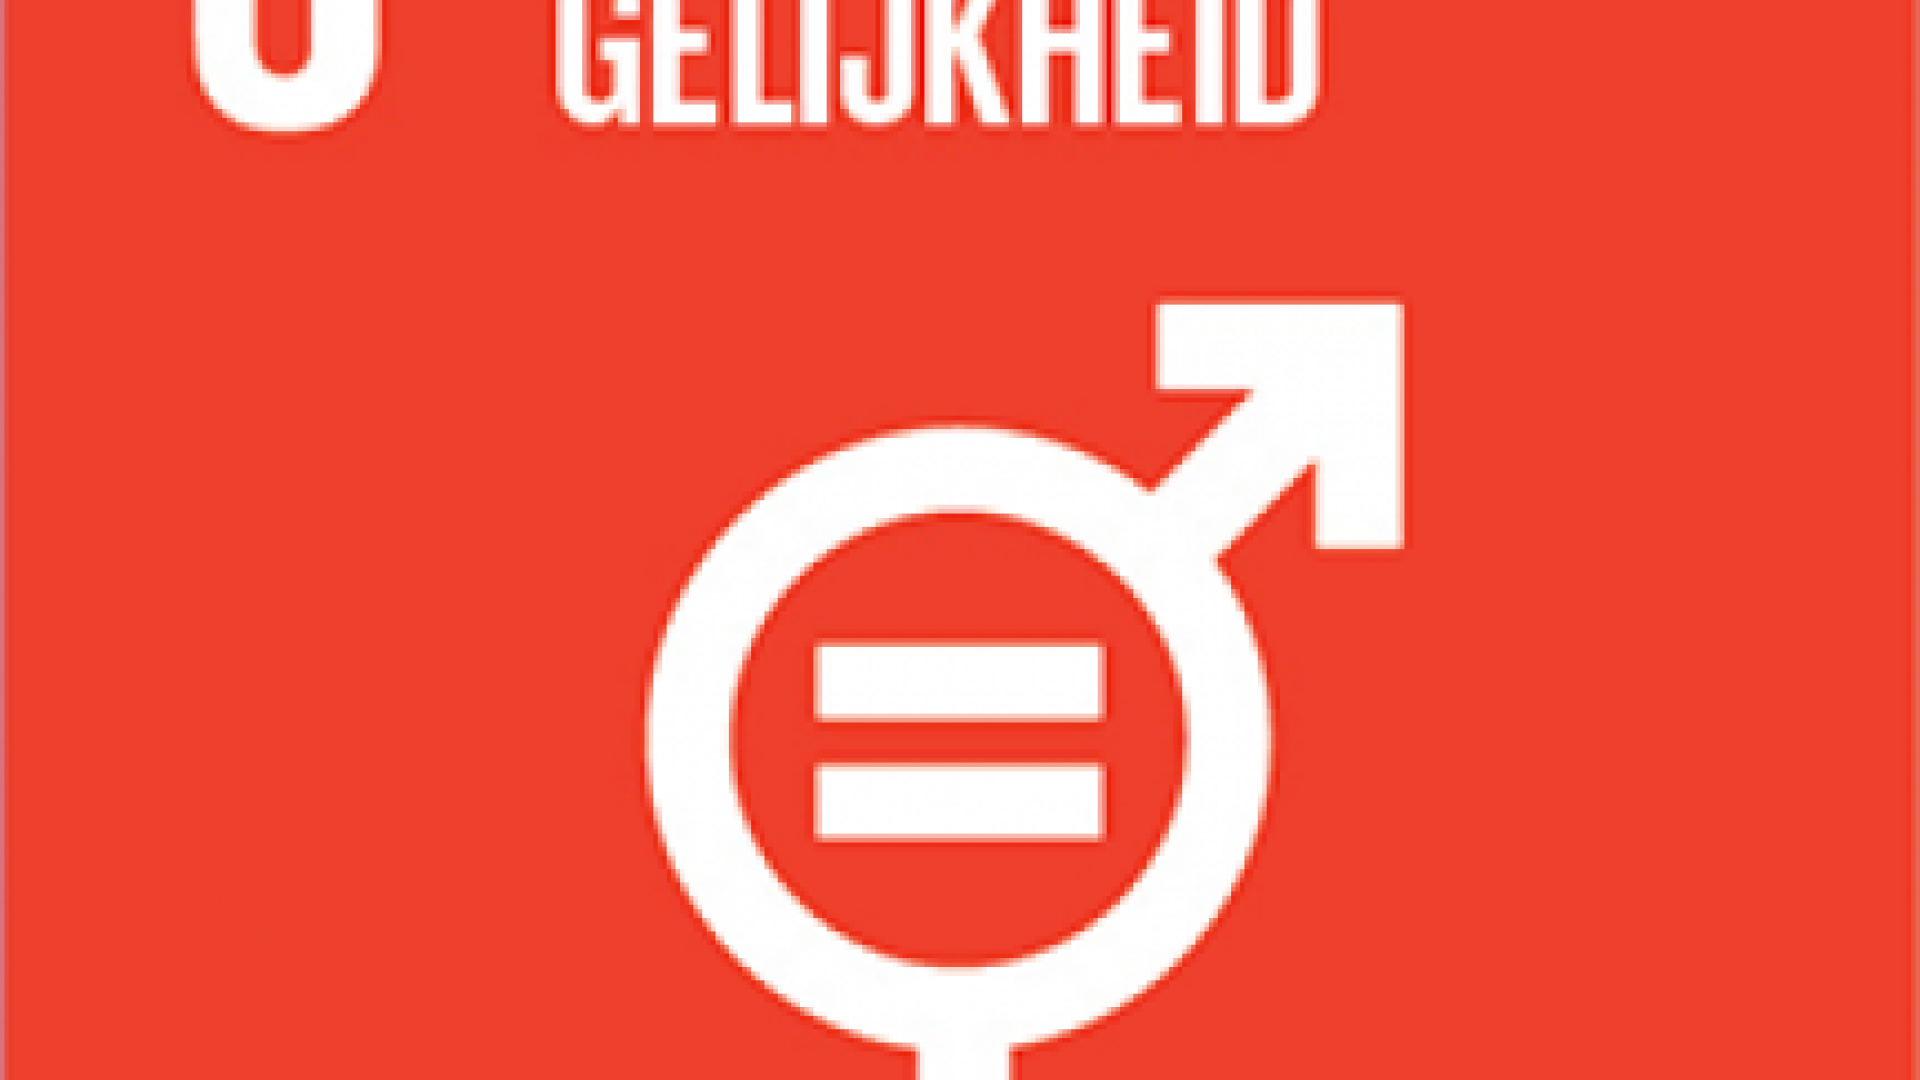 global goal 05 - gendergelijkheid